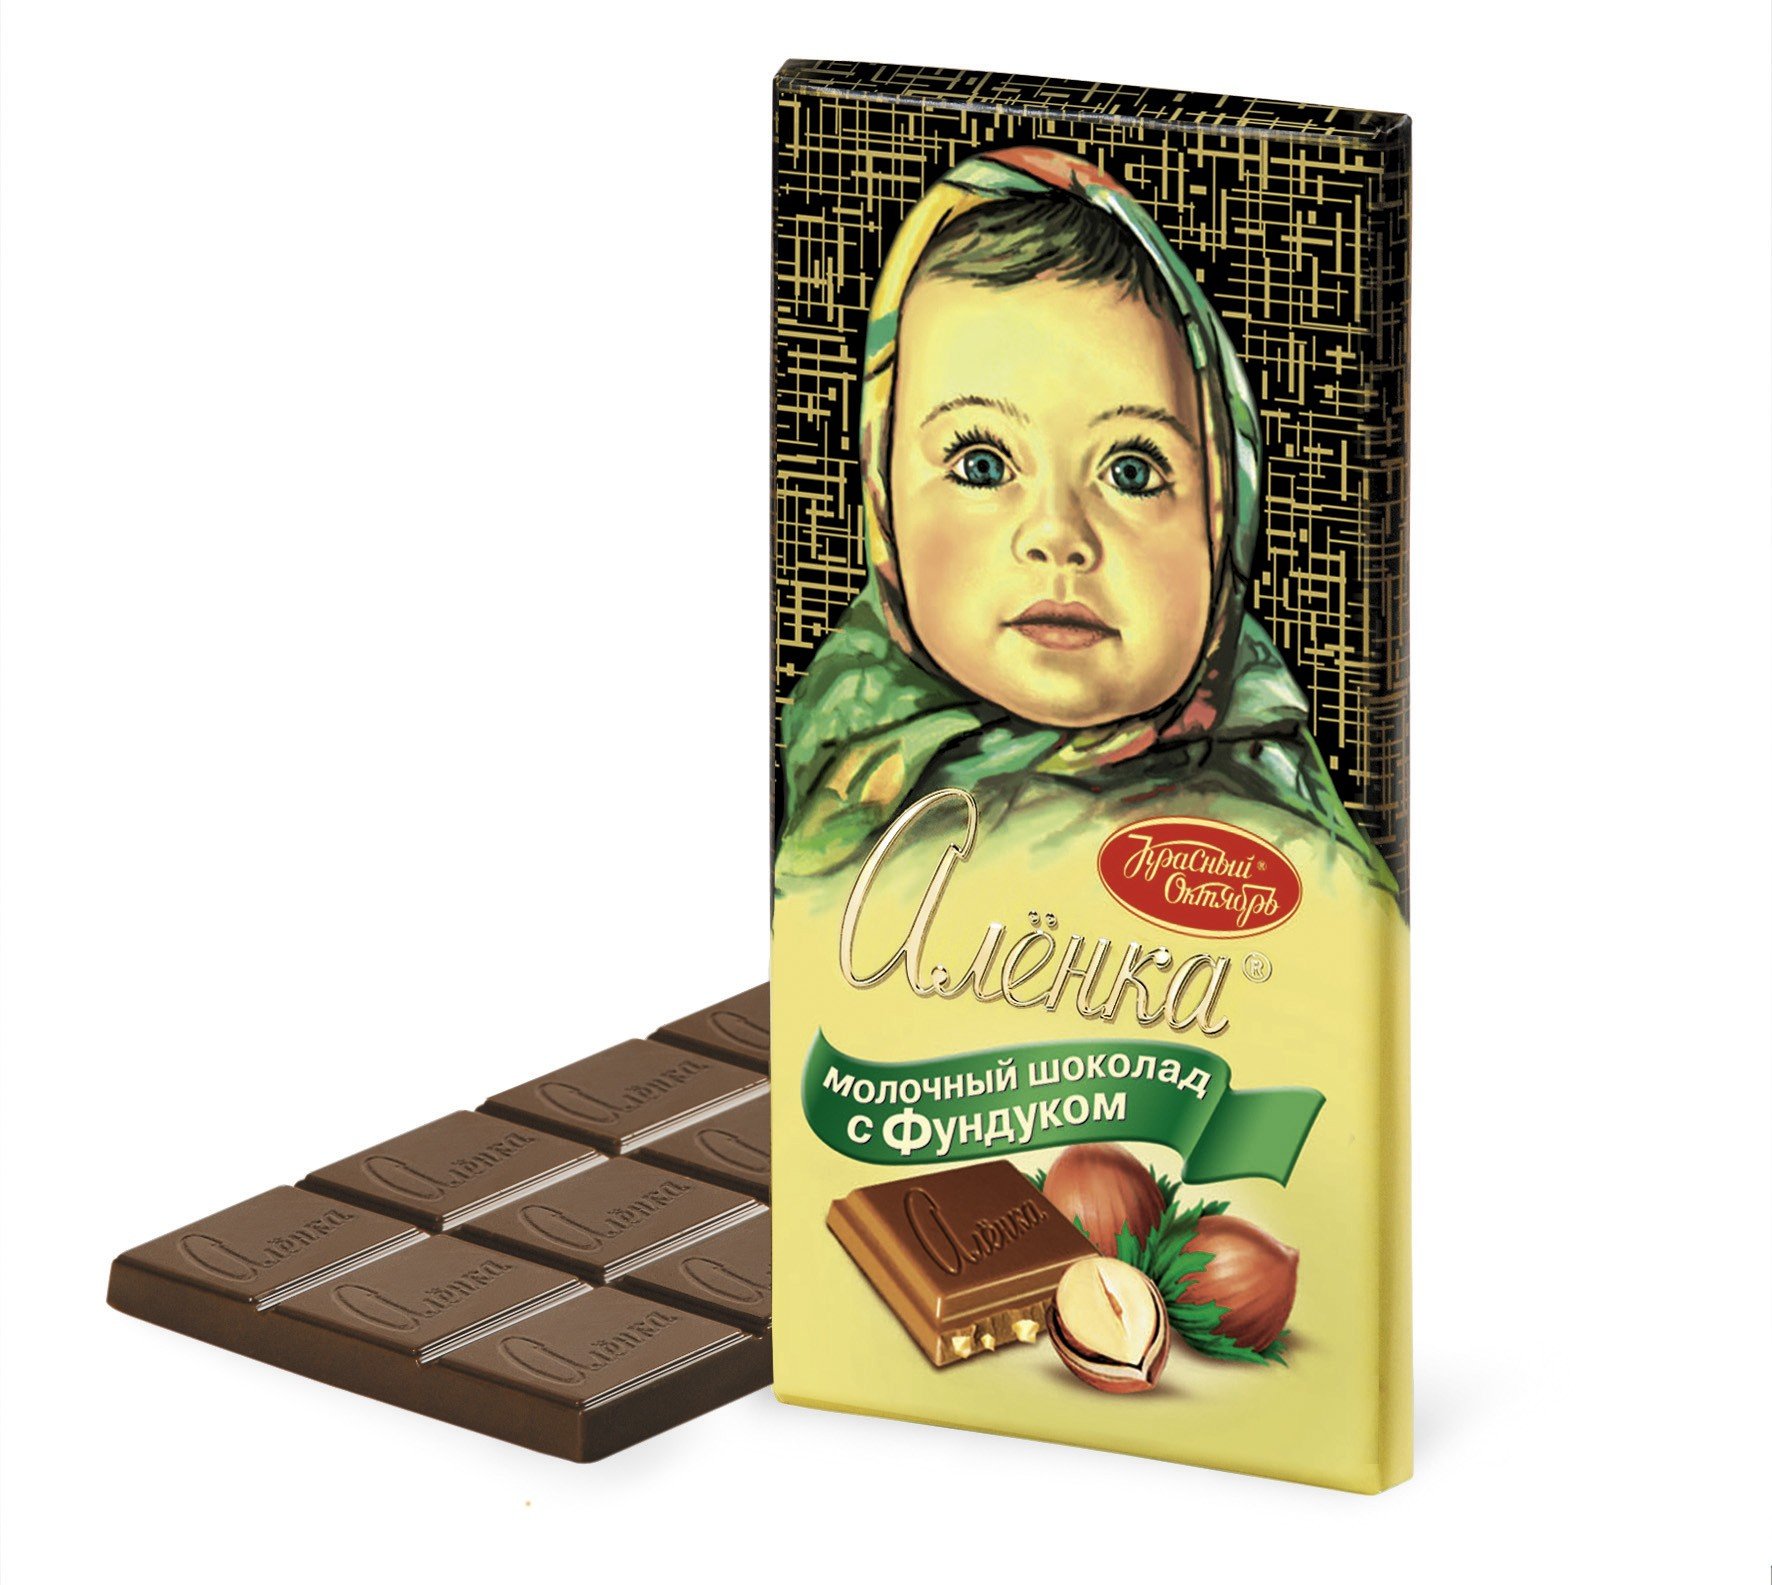 Alenka Milk Chocolate with Hazelnut, 3.52 oz / 100 g